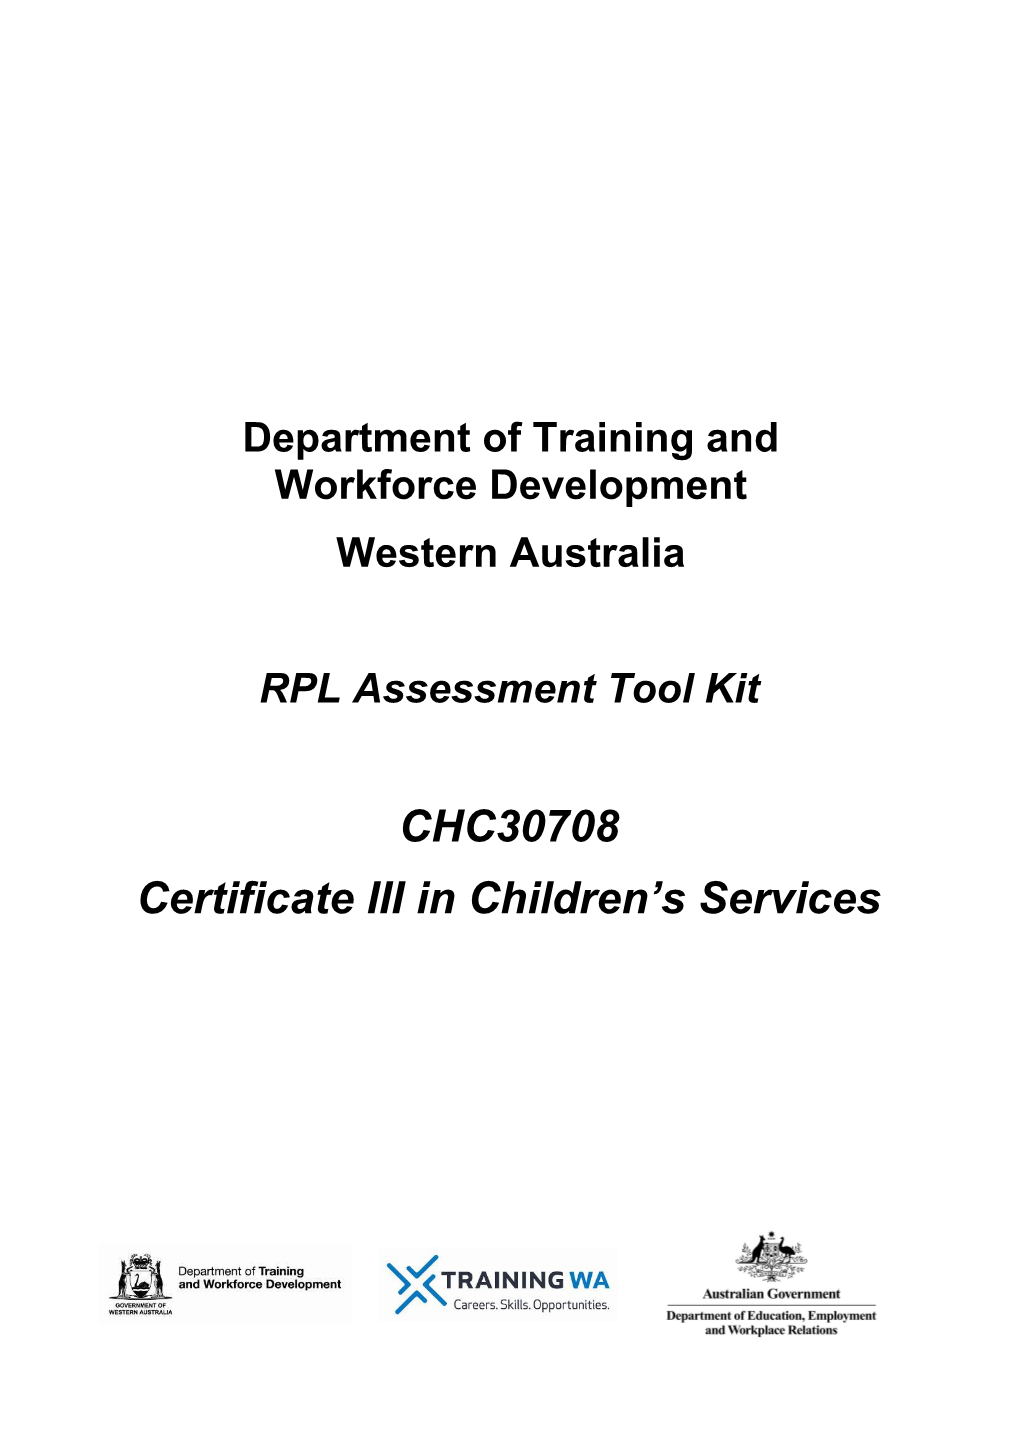 RPL Assessment Tool Kit s1